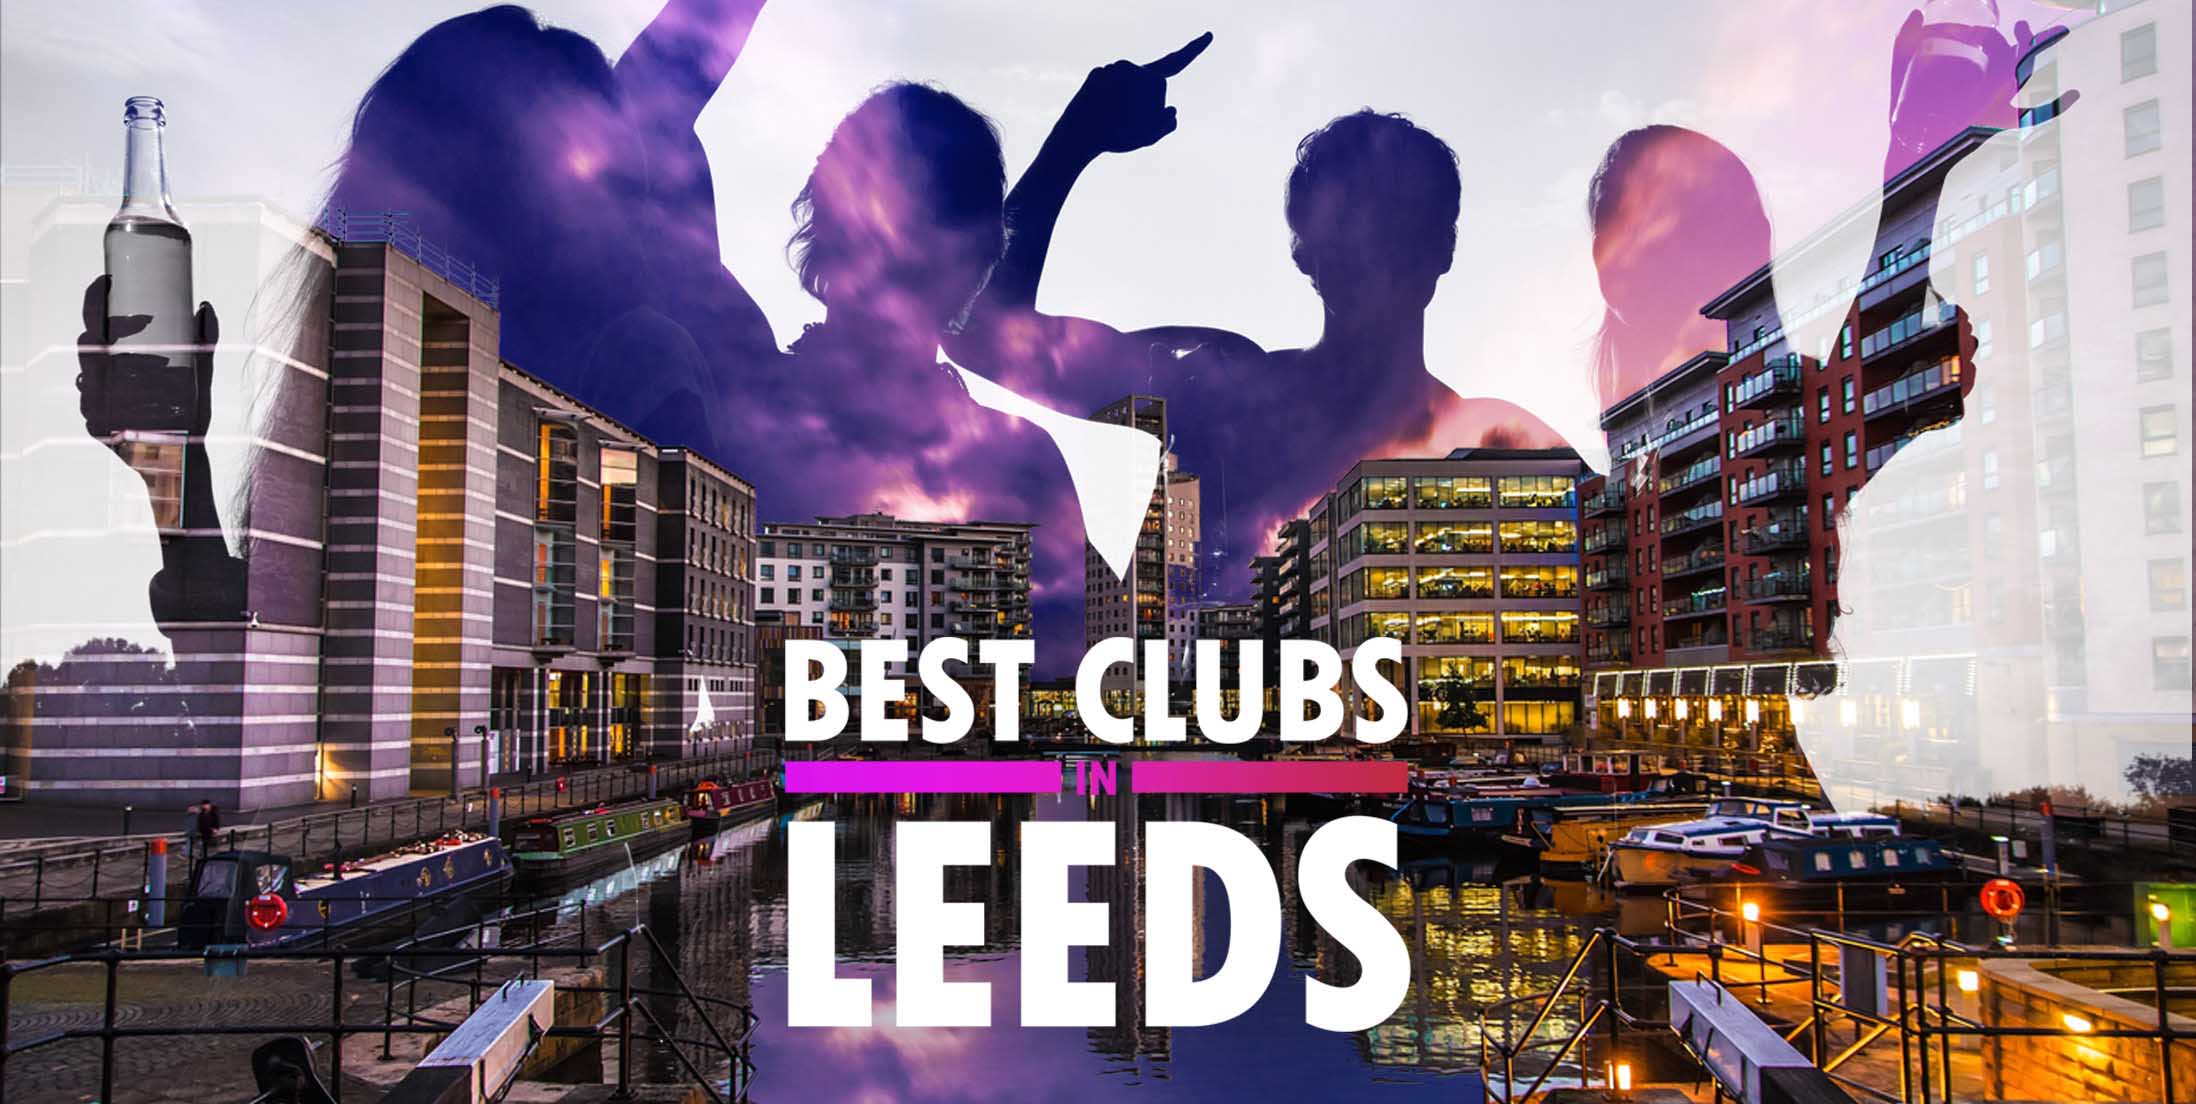 Best Clubs in Leeds